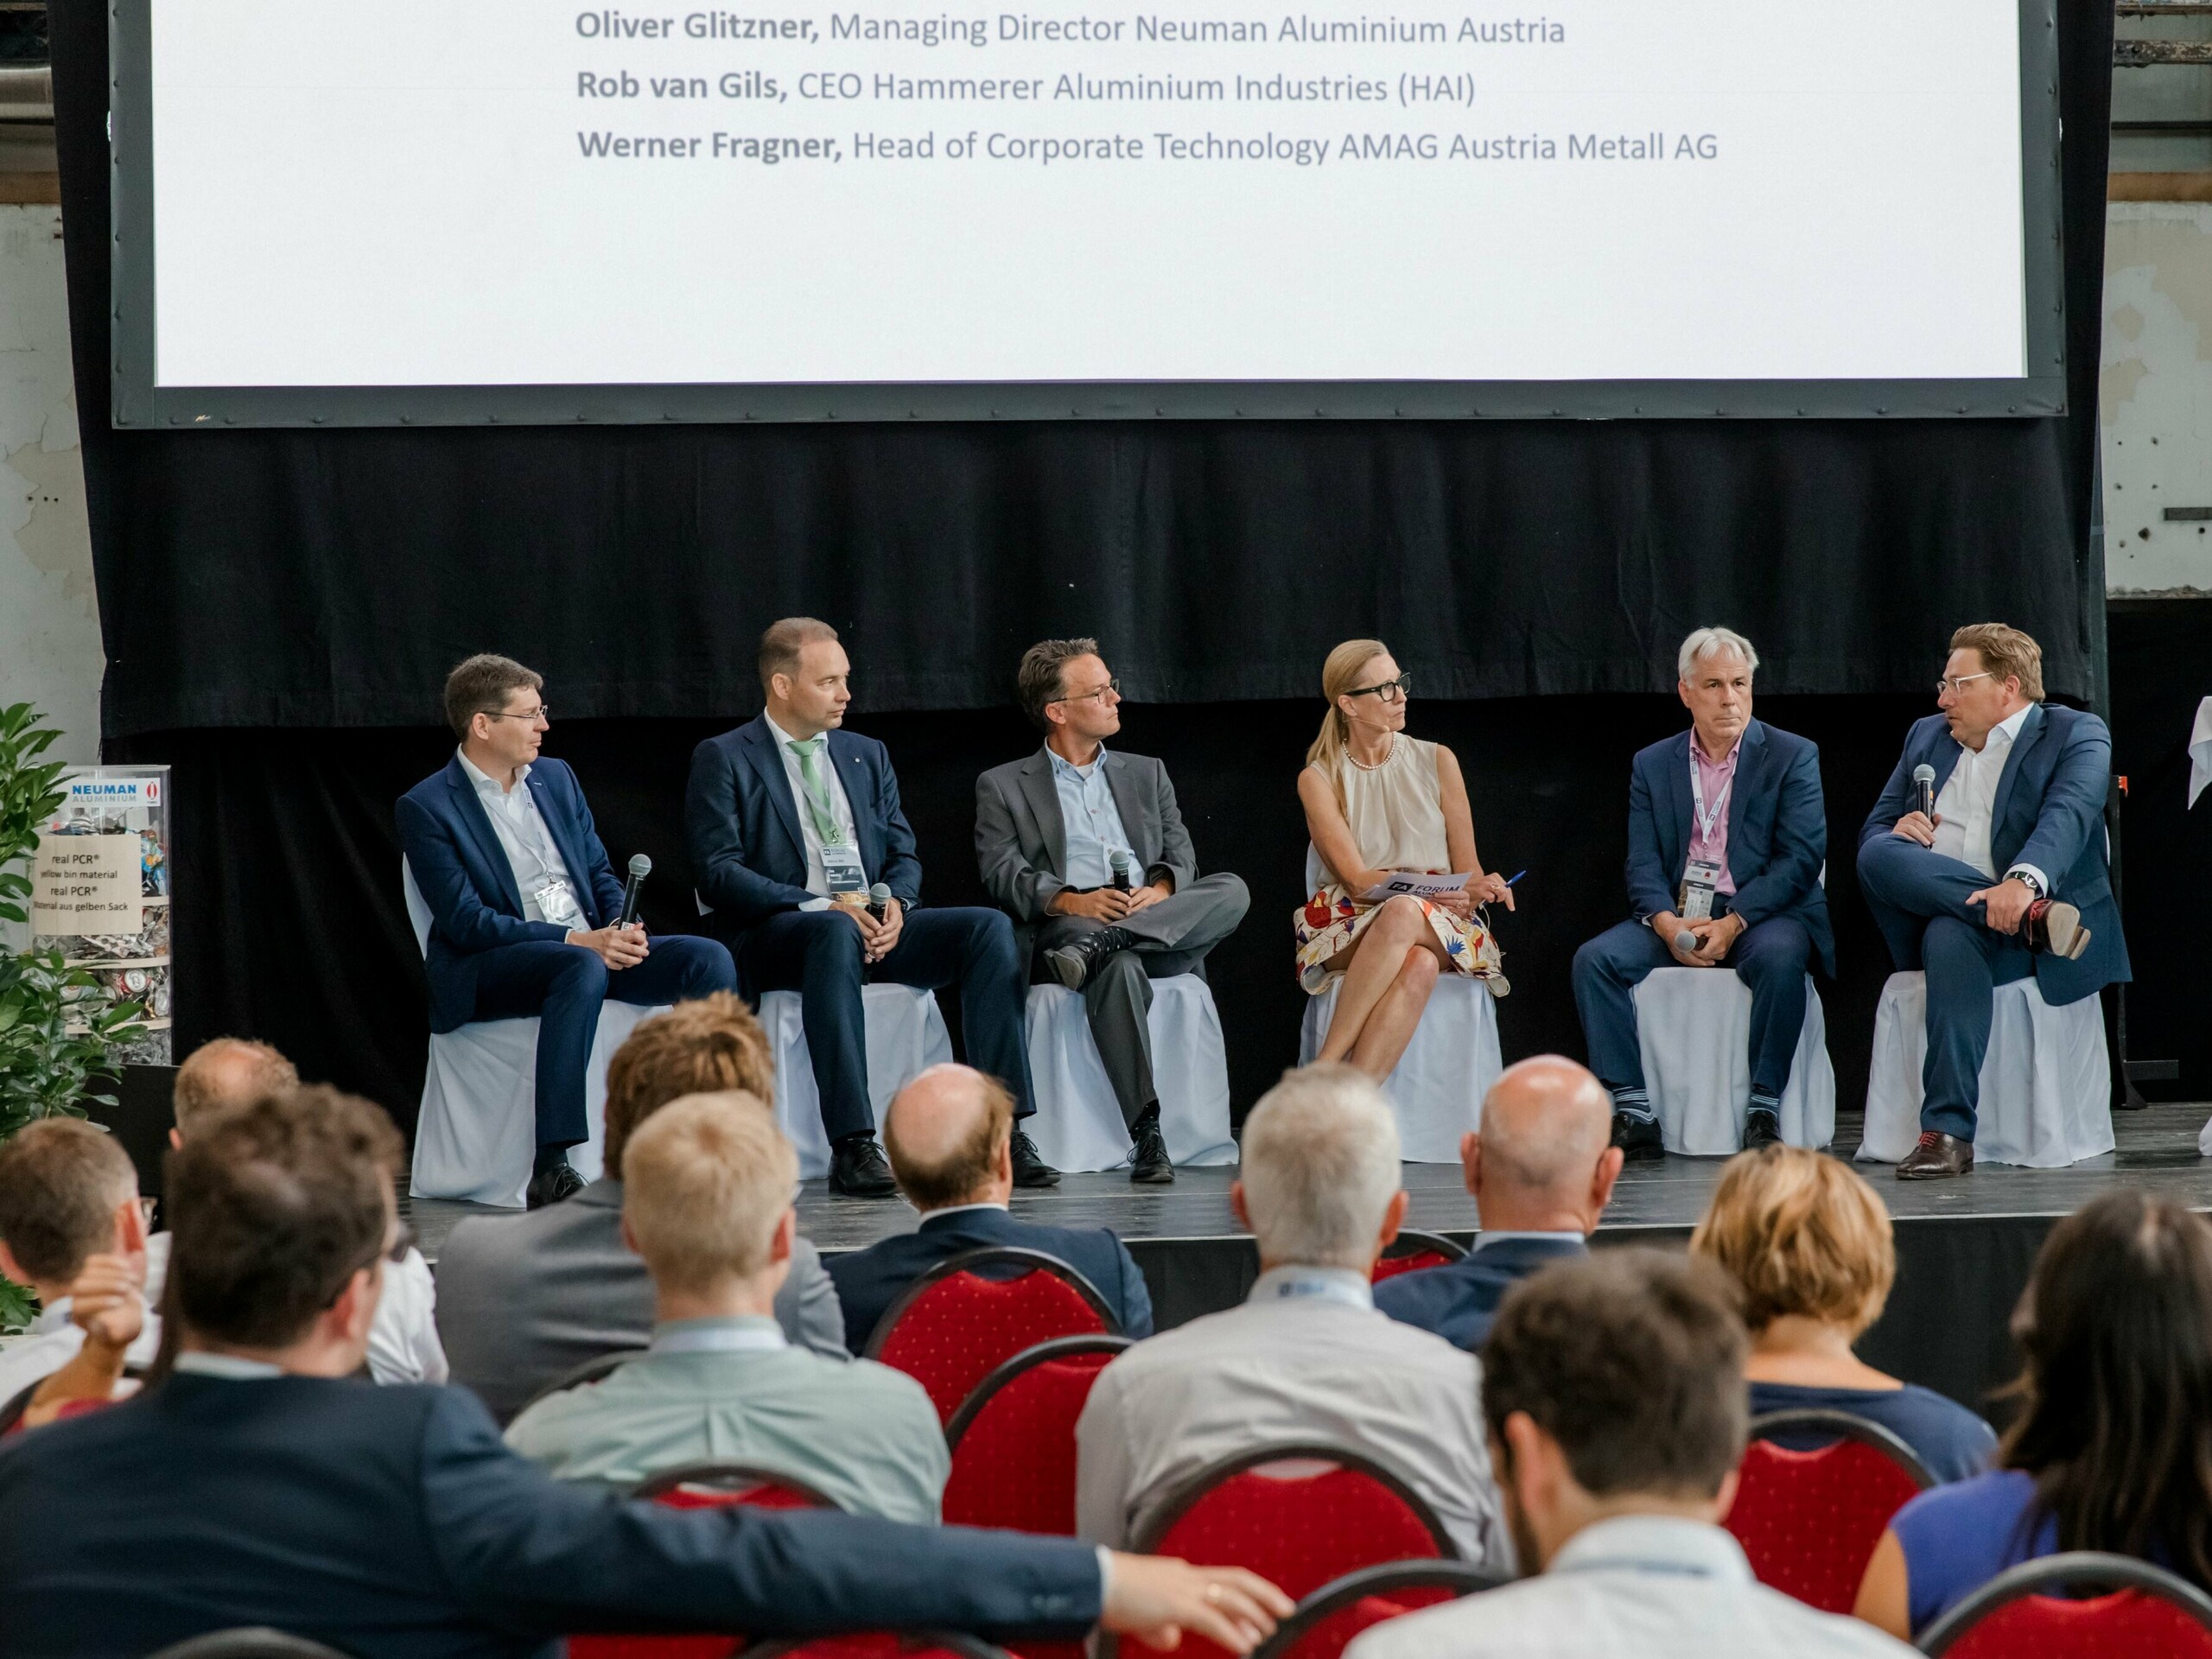 Bild einer Diskussionsrunde mit 5 Personen, die sich während der Konferenz "Forum Aluminium" über die Aluminiumindustrie in Europa austauschen.